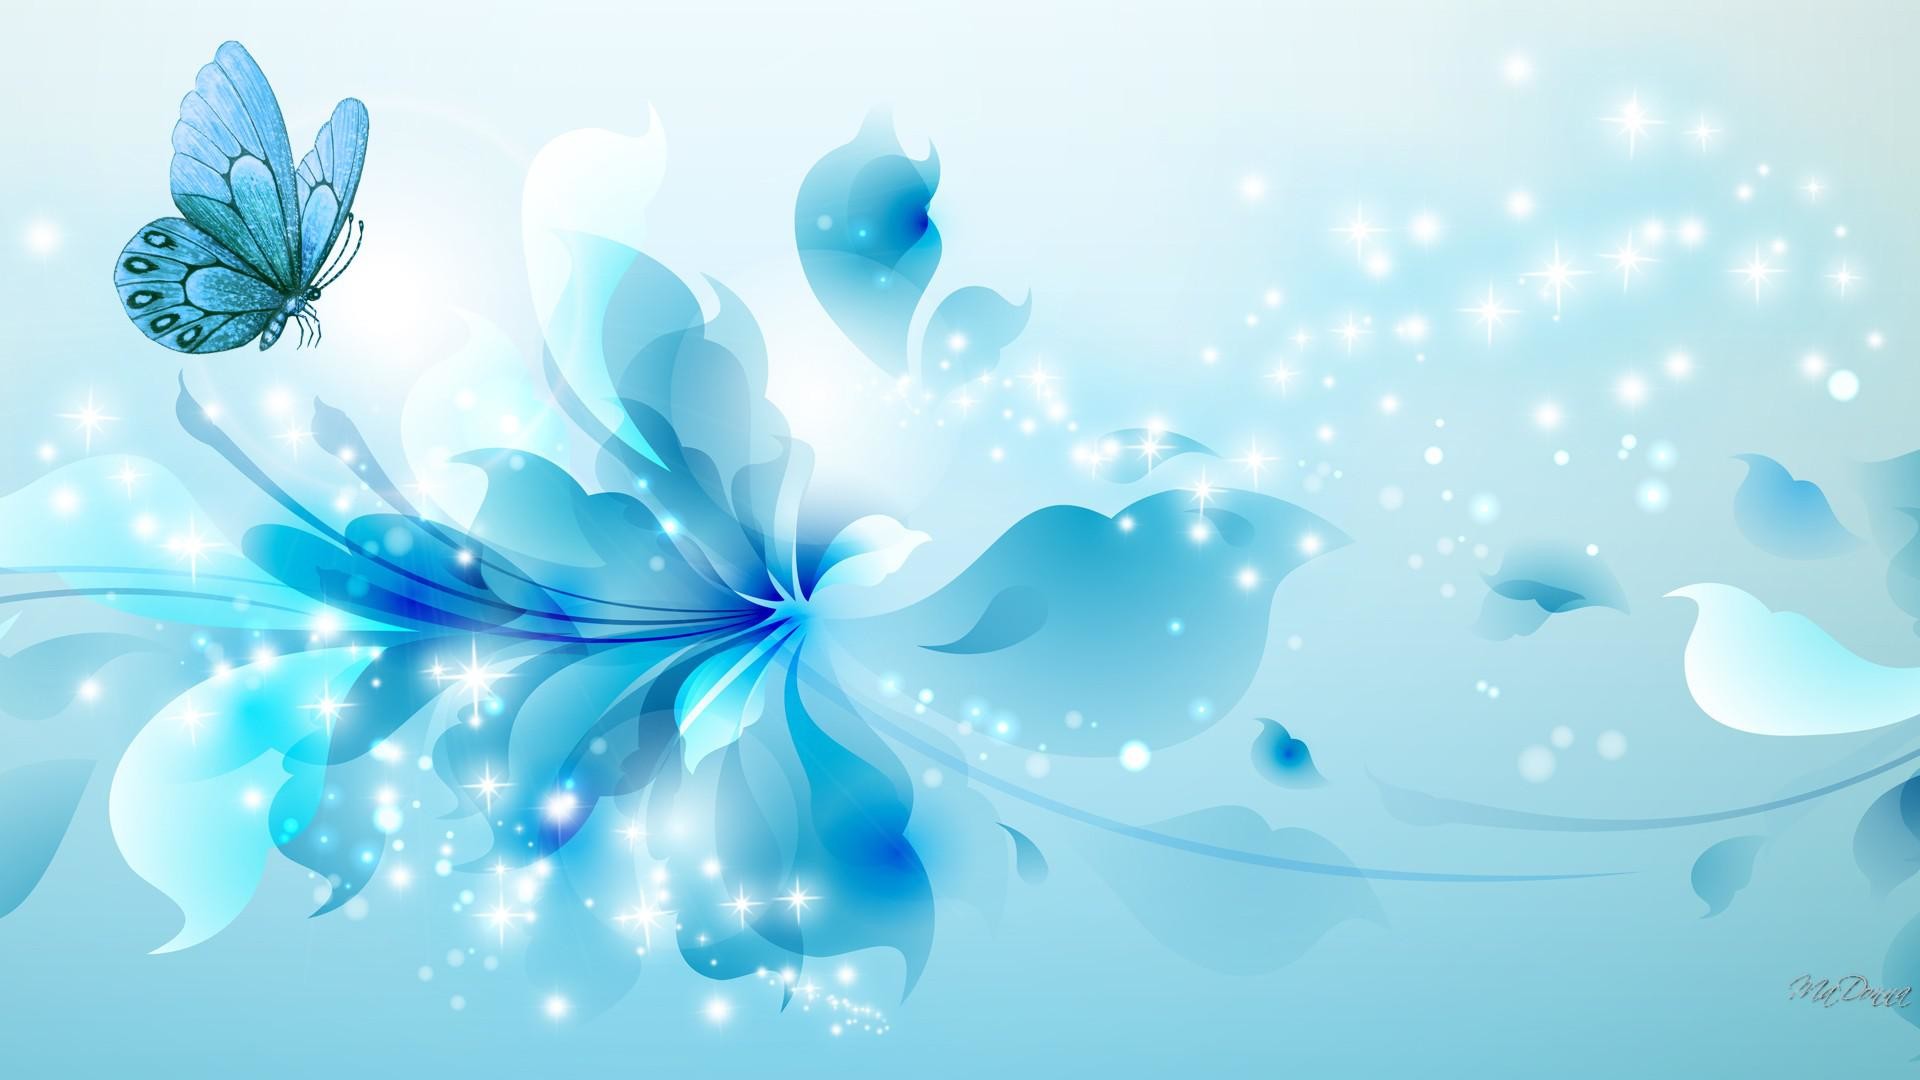 HD-aqua-blue-wallpaper-download.jpg (1920Ã1080) | blue flowers | Pinterest  | Wallpaper and Photo manipulation